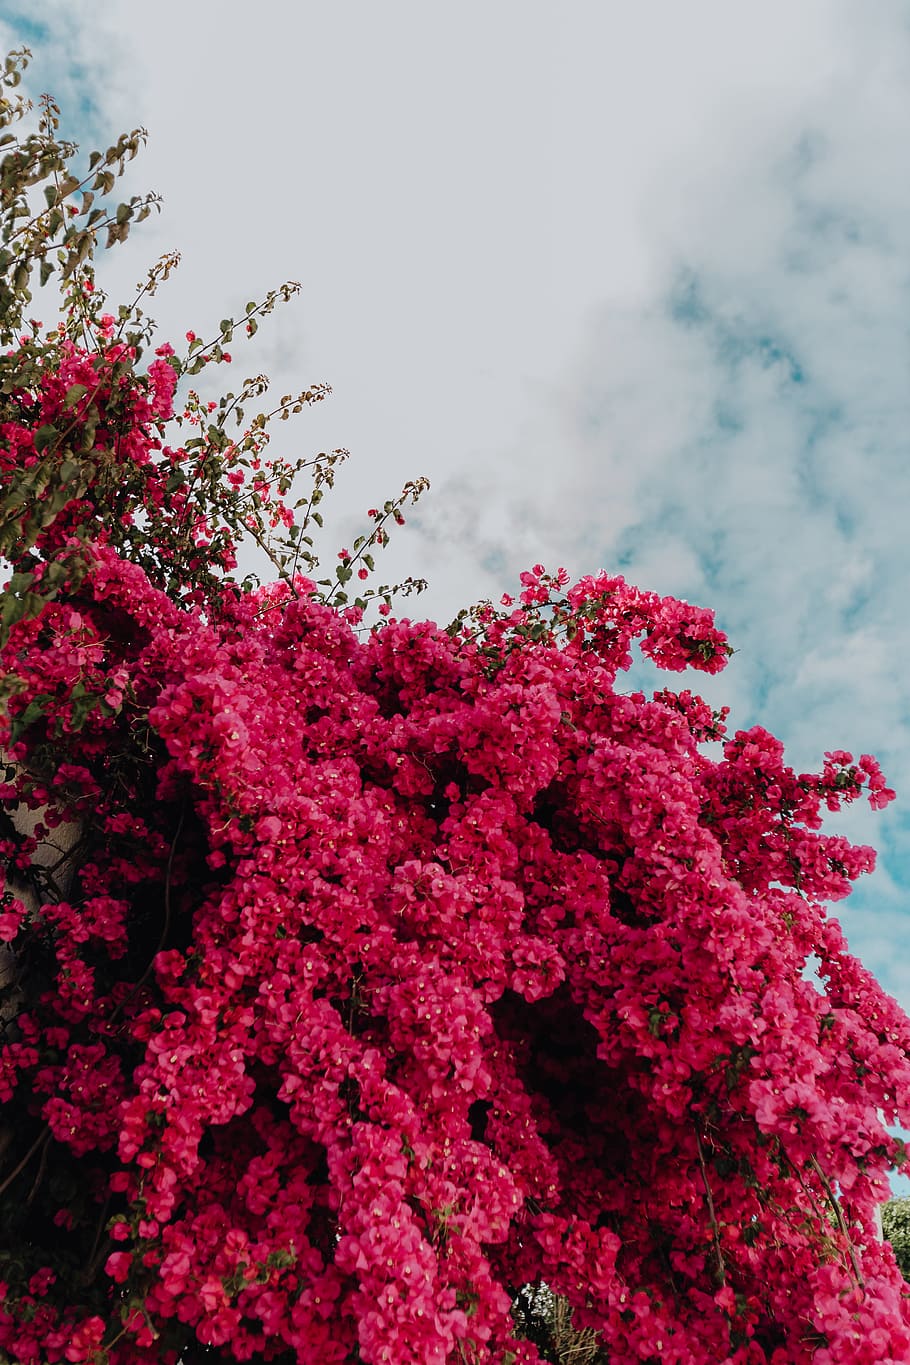 Khám phá những bông hoa bougainvillea màu hồng tuyệt đẹp, những nụ cười của chúng sẽ khiến bạn thực sự cảm thấy hạnh phúc. Với màu sắc tươi sáng, hoa bougainvillea màu hồng chắc chắn sẽ khiến bạn tím ngắt lòng.